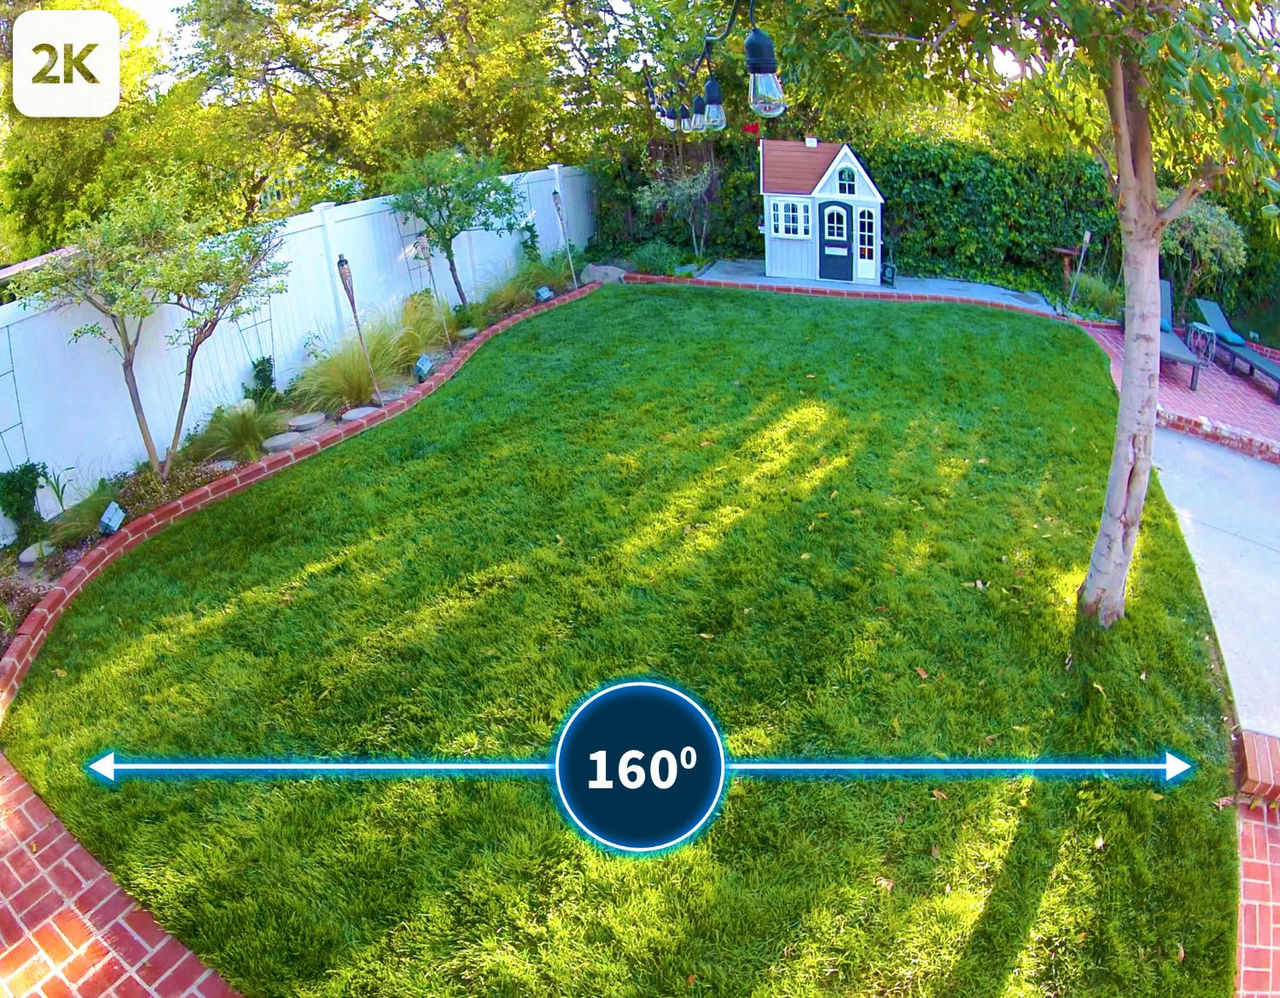 La vision d'un jardin avec une vue à 160° provenant de la caméra de sécurité